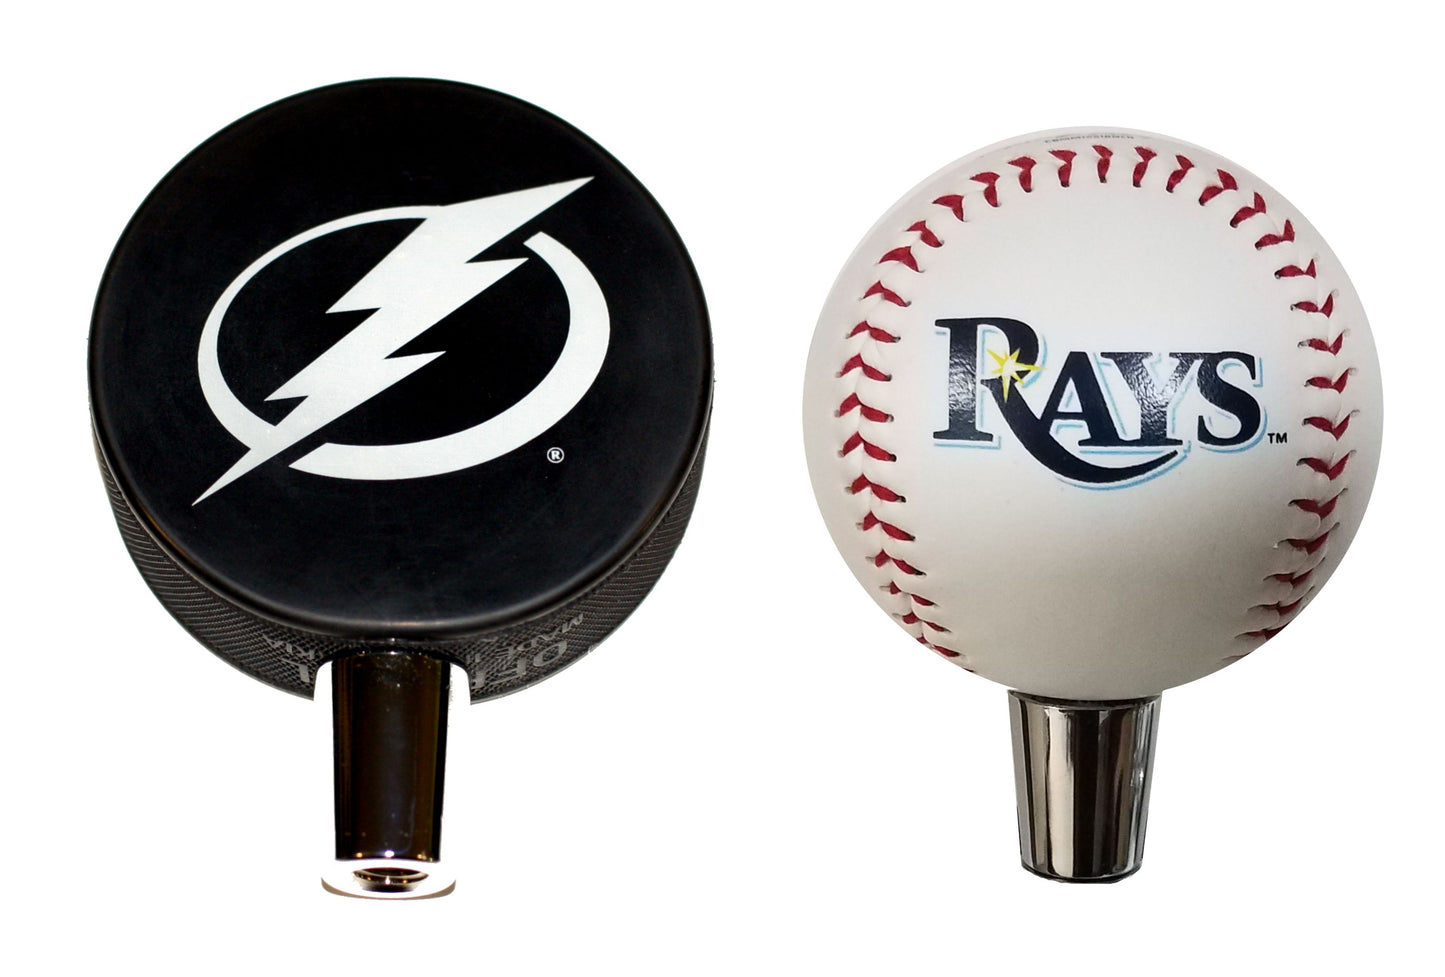 Tampa Bay Lightning Hockey Puck And Tampa Bay Rays Baseball Beer Tap Handle Set